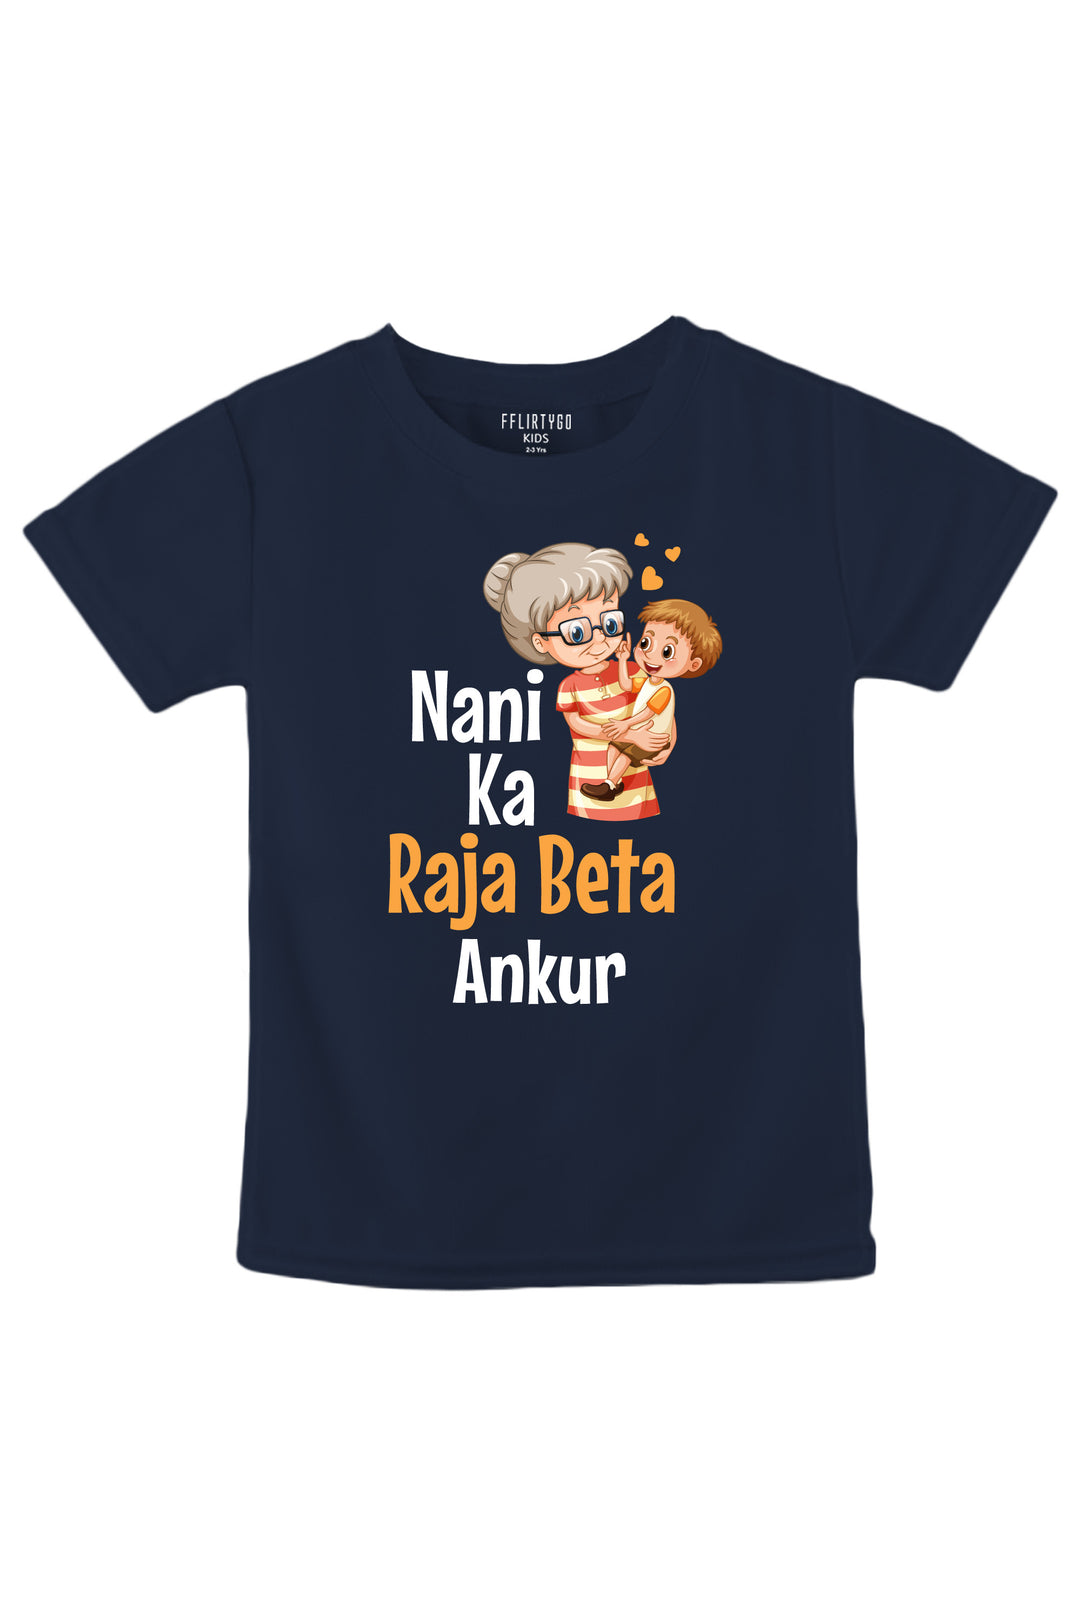 Nani Ka Raja Beta w/ Custom Name